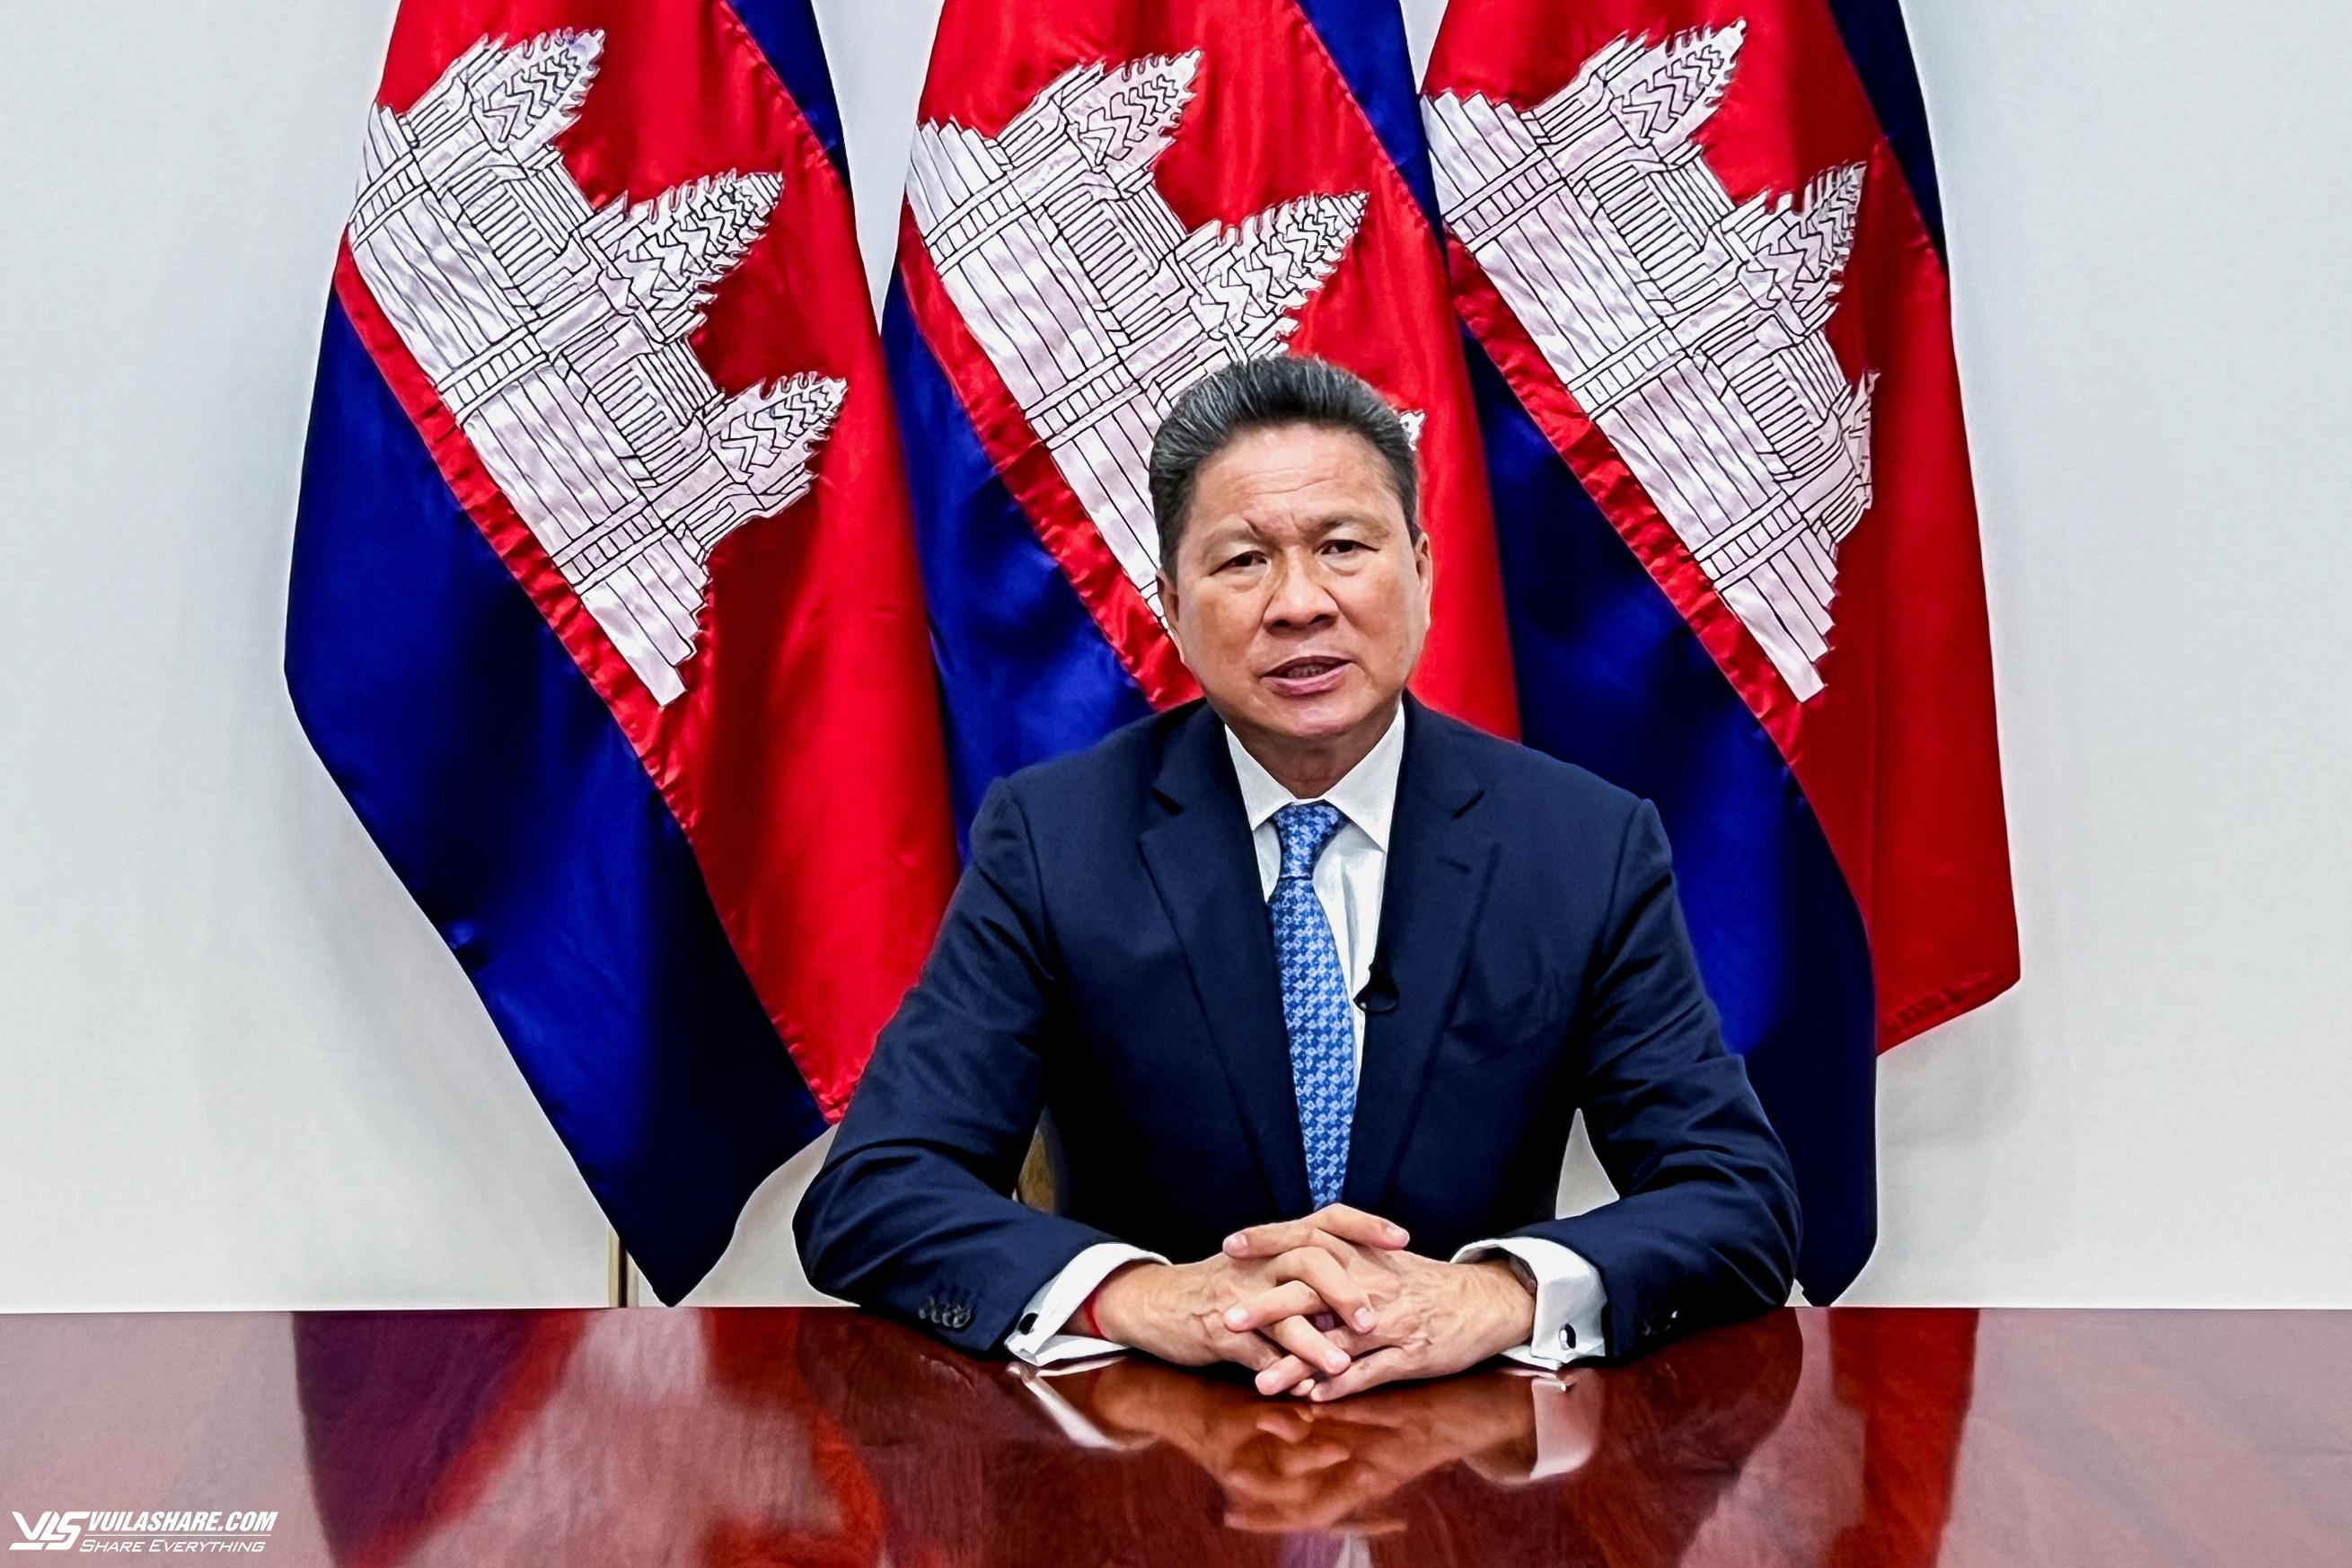 Campuchia muốn Nhật Bản tăng đầu tư để giảm phụ thuộc Trung Quốc- Ảnh 1.